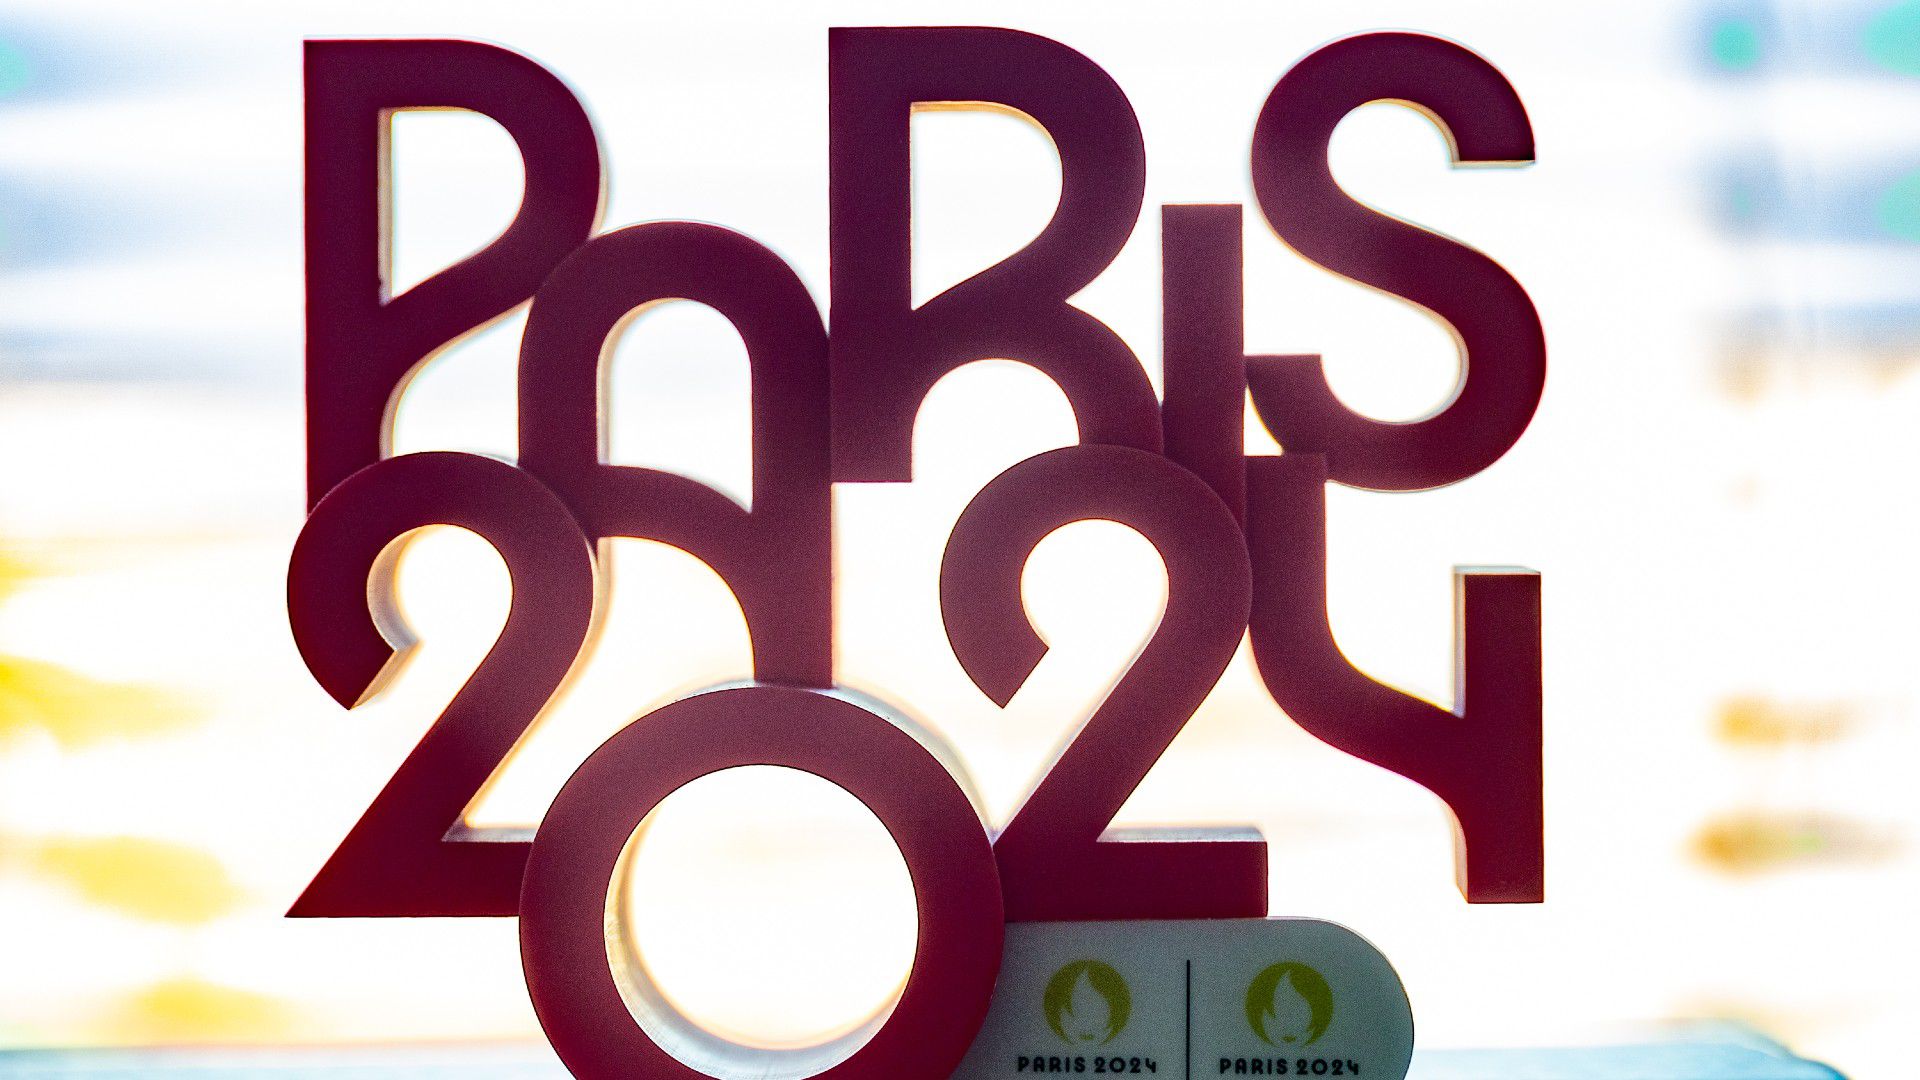 Lesz huszonötezer eurós jegy is a párizsi olimpia megnyitójára